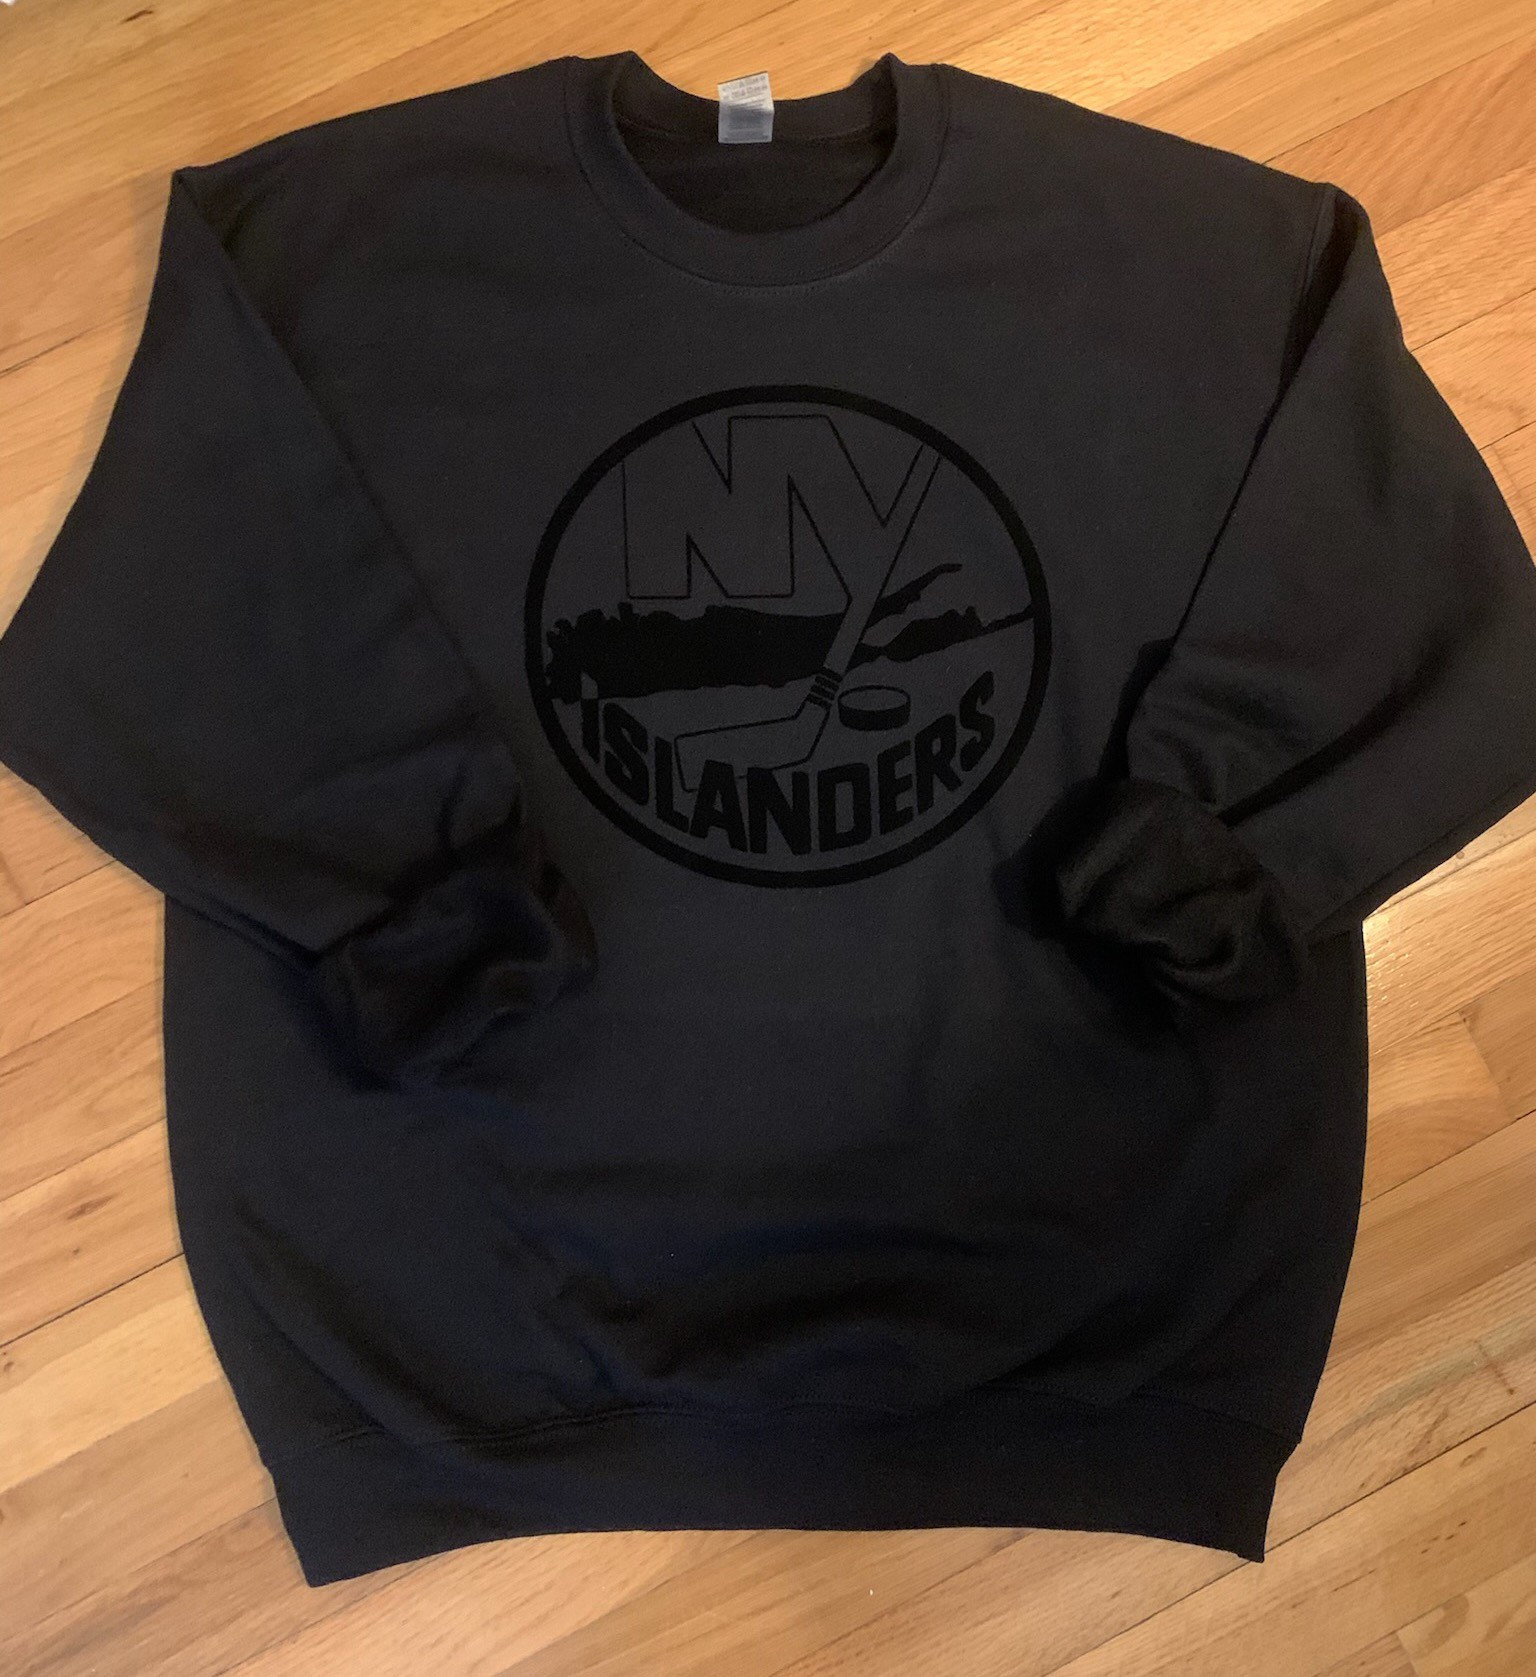 New york islanders fisherman shirt, hoodie, longsleeve tee, sweater